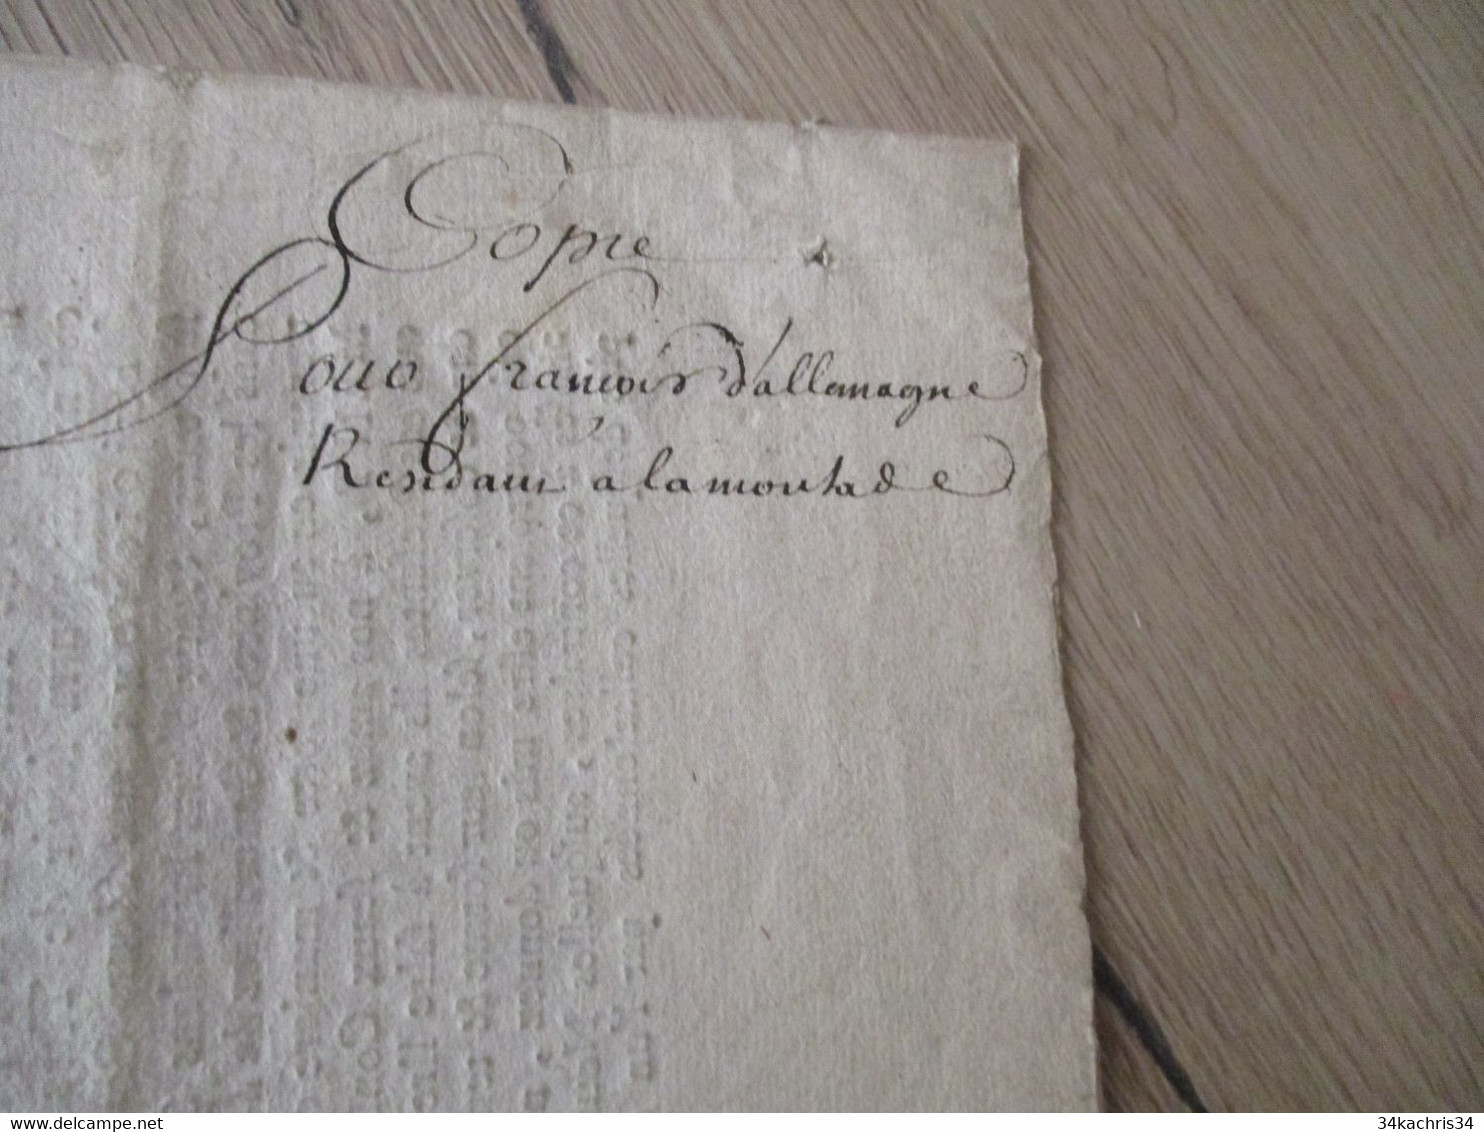 M8 Déclaration du Roi pour la recherche des usurpateurs des titres de noblesse 04/09/1696 pièce signée autographe